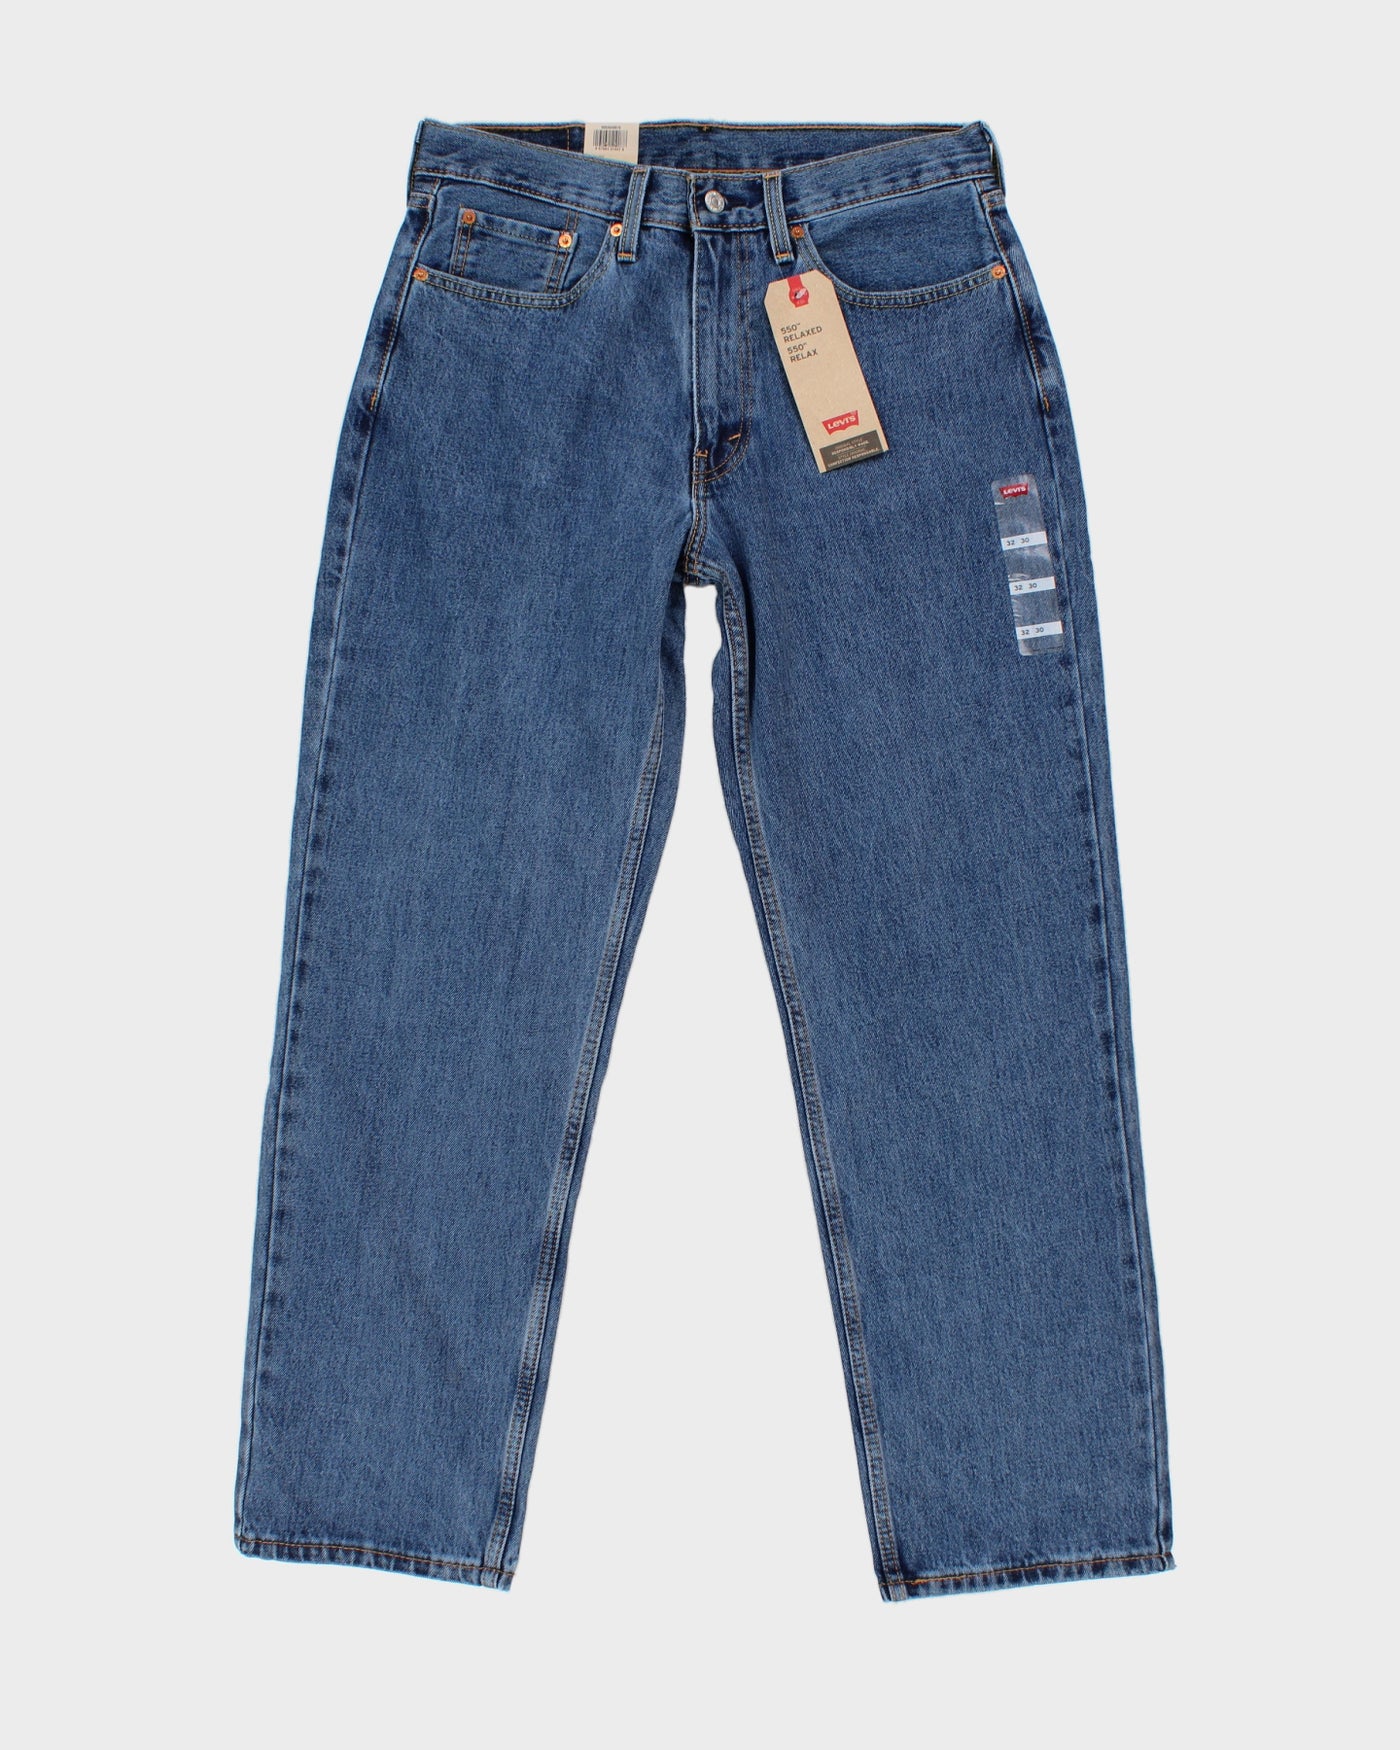 Levi's 550 Medium Wash Blue Jeans W32 L30